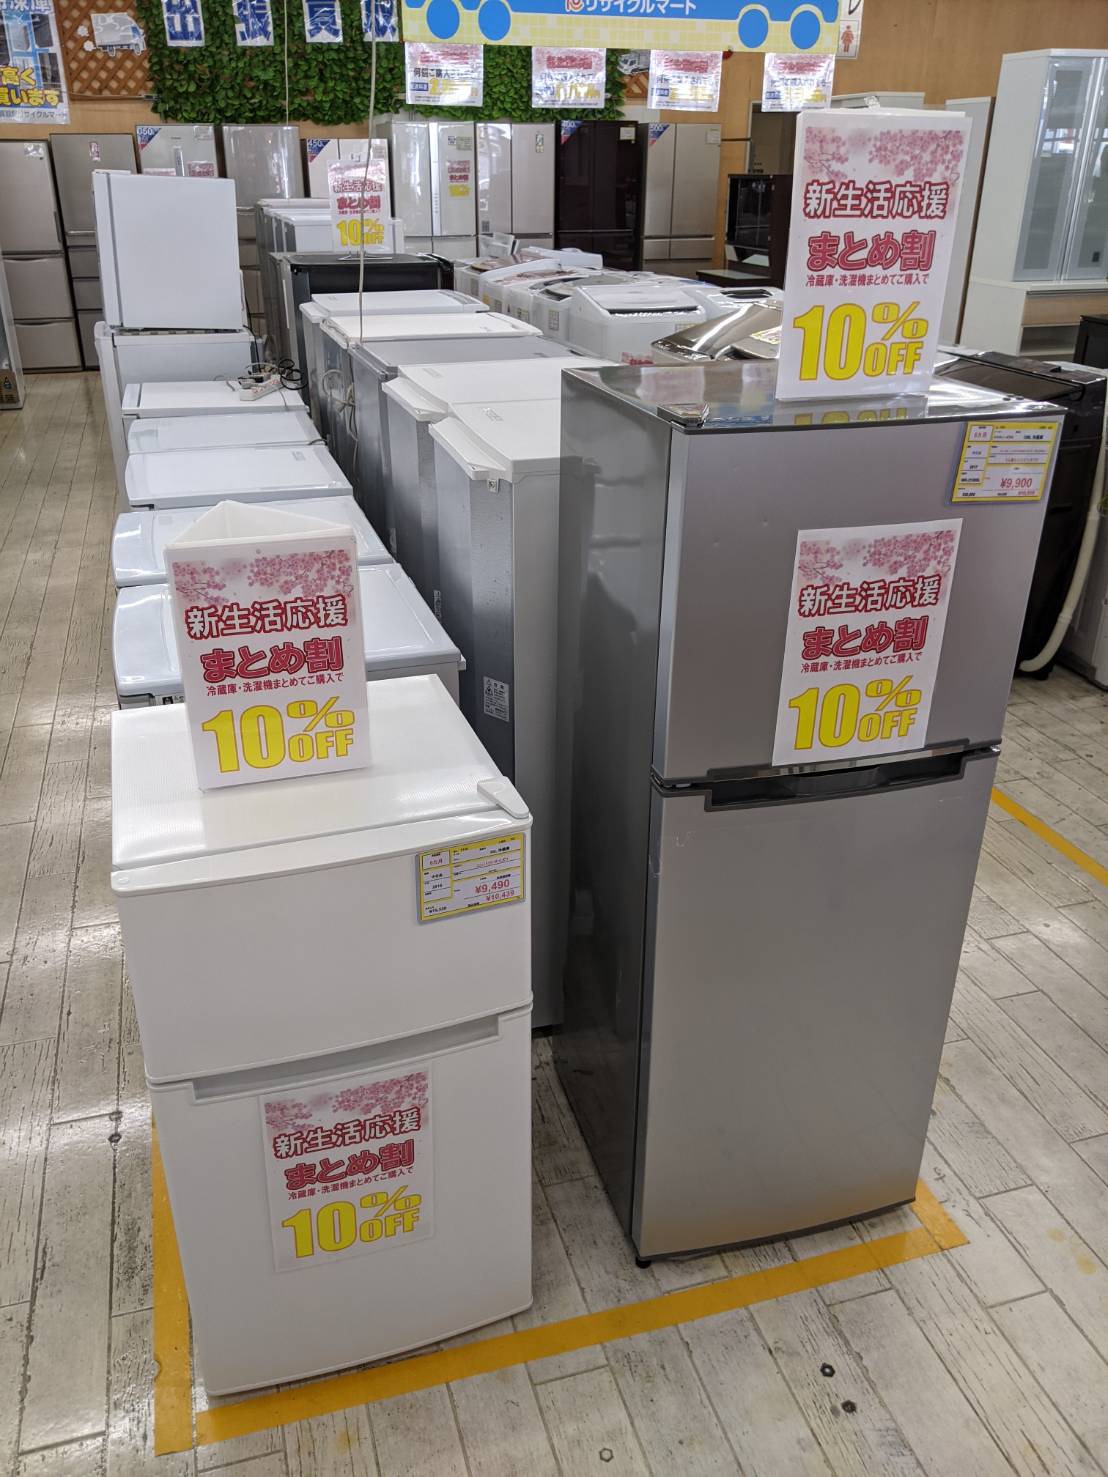 お得なキャンペーン開催中‼ 冷蔵庫、洗濯機 同時購入で10%OFF!!